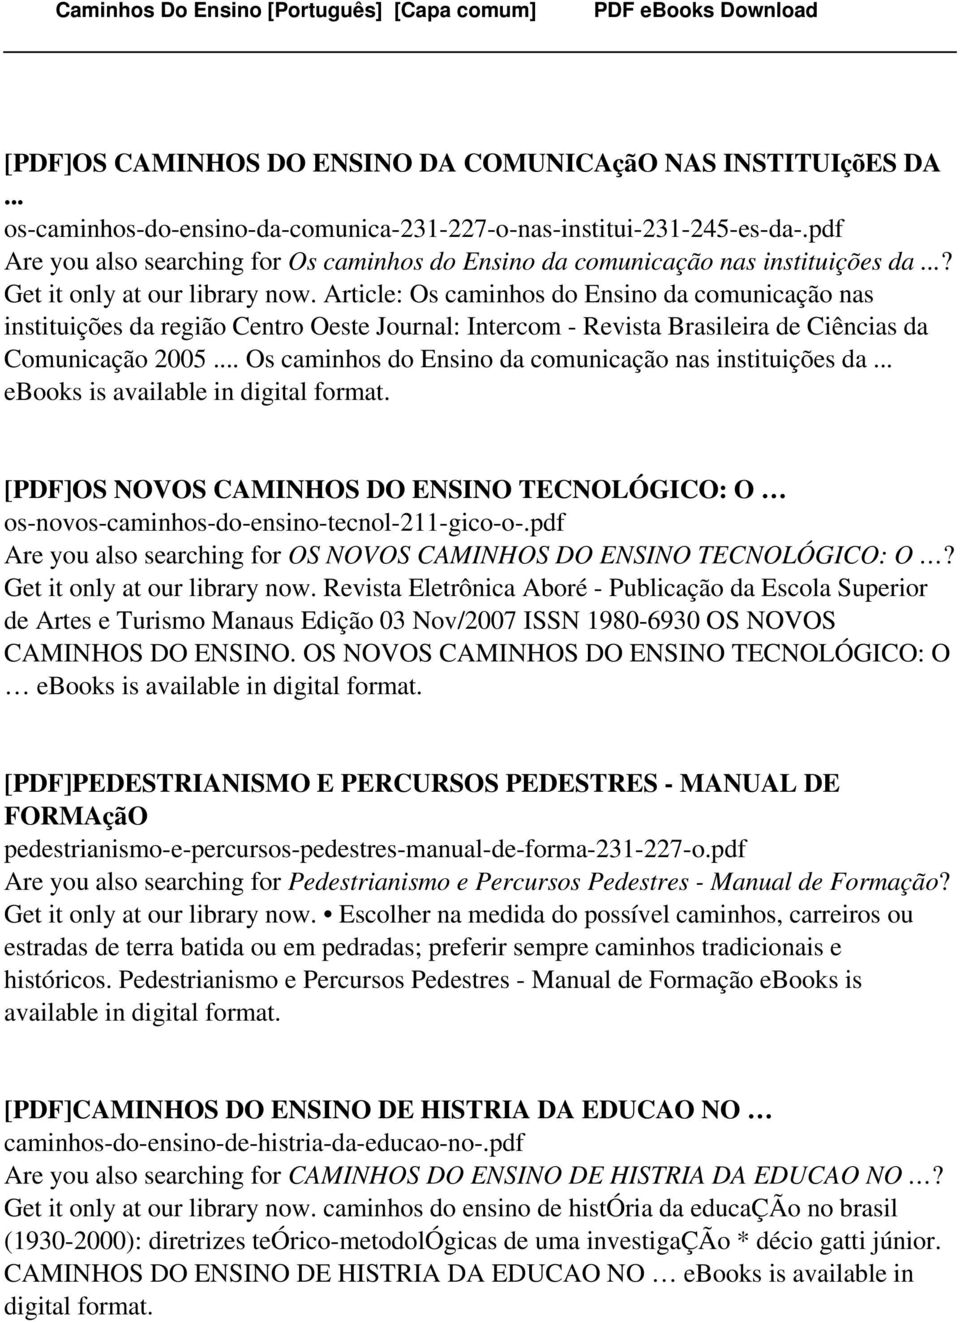 Article: Os caminhos do Ensino da comunicação nas instituições da região Centro Oeste Journal: Intercom - Revista Brasileira de Ciências da Comunicação 2005.